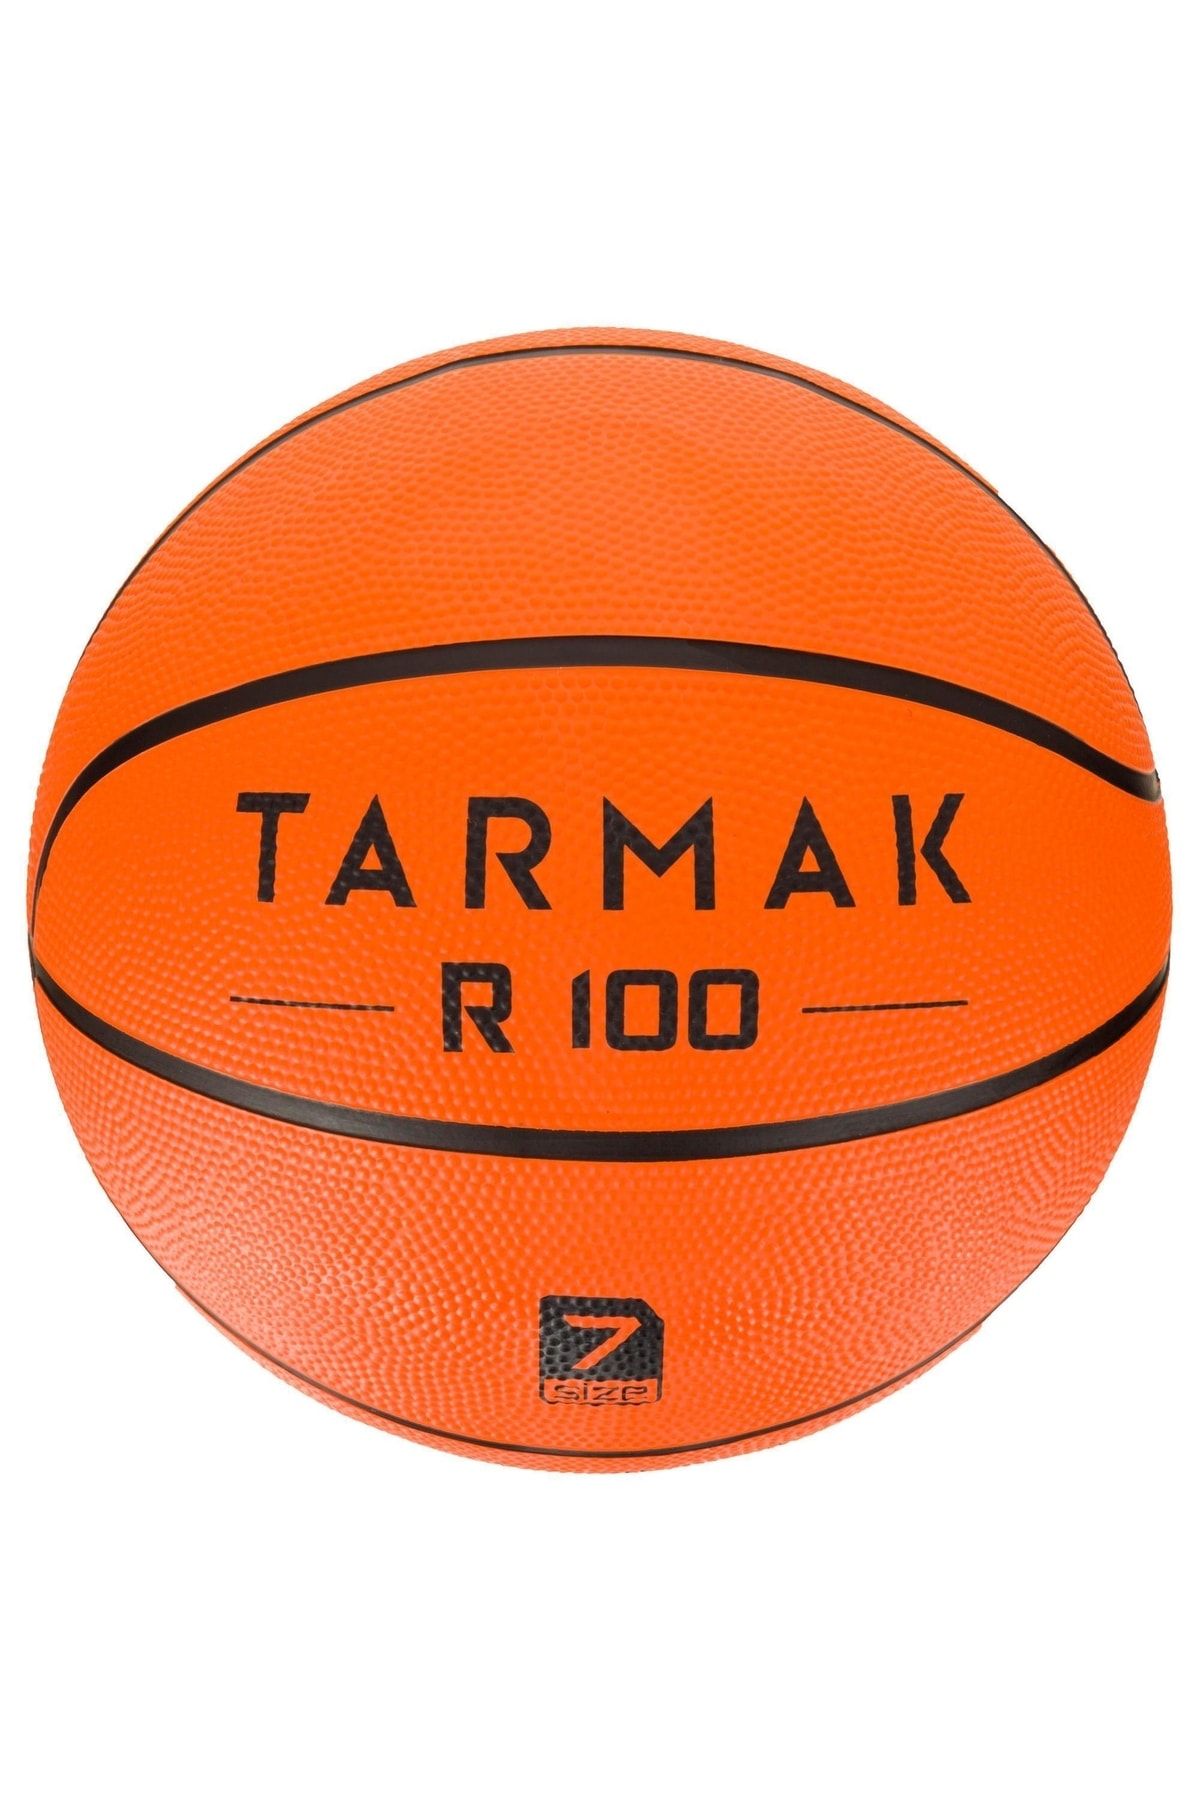 Decathlon Tarmak Basketbol Topu R100 - 7 Numara -yetişkin-turuncu